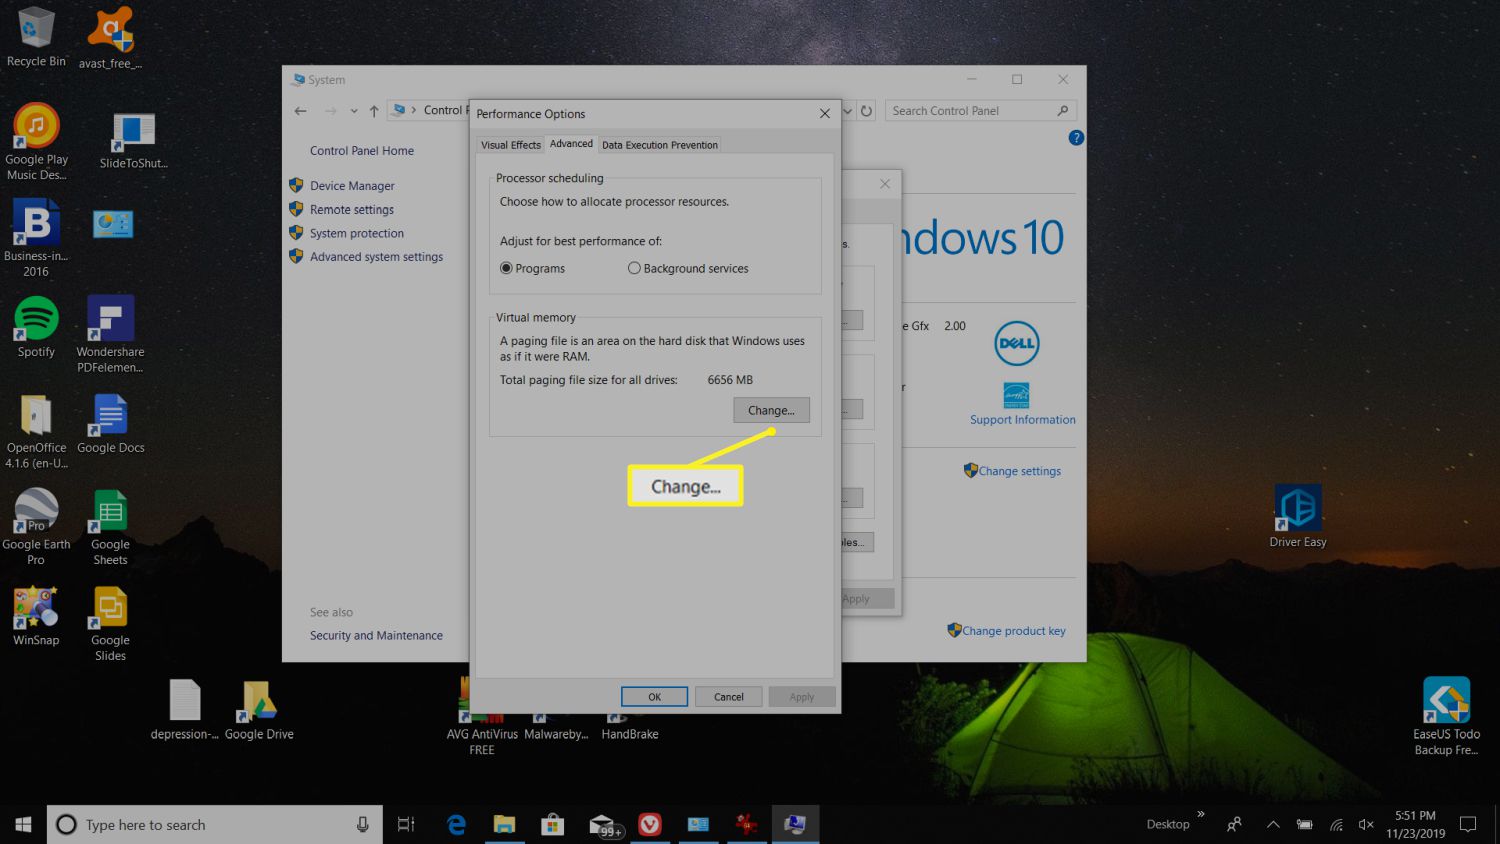 Ändra-knapp för att ändra vitalt minne i Windows